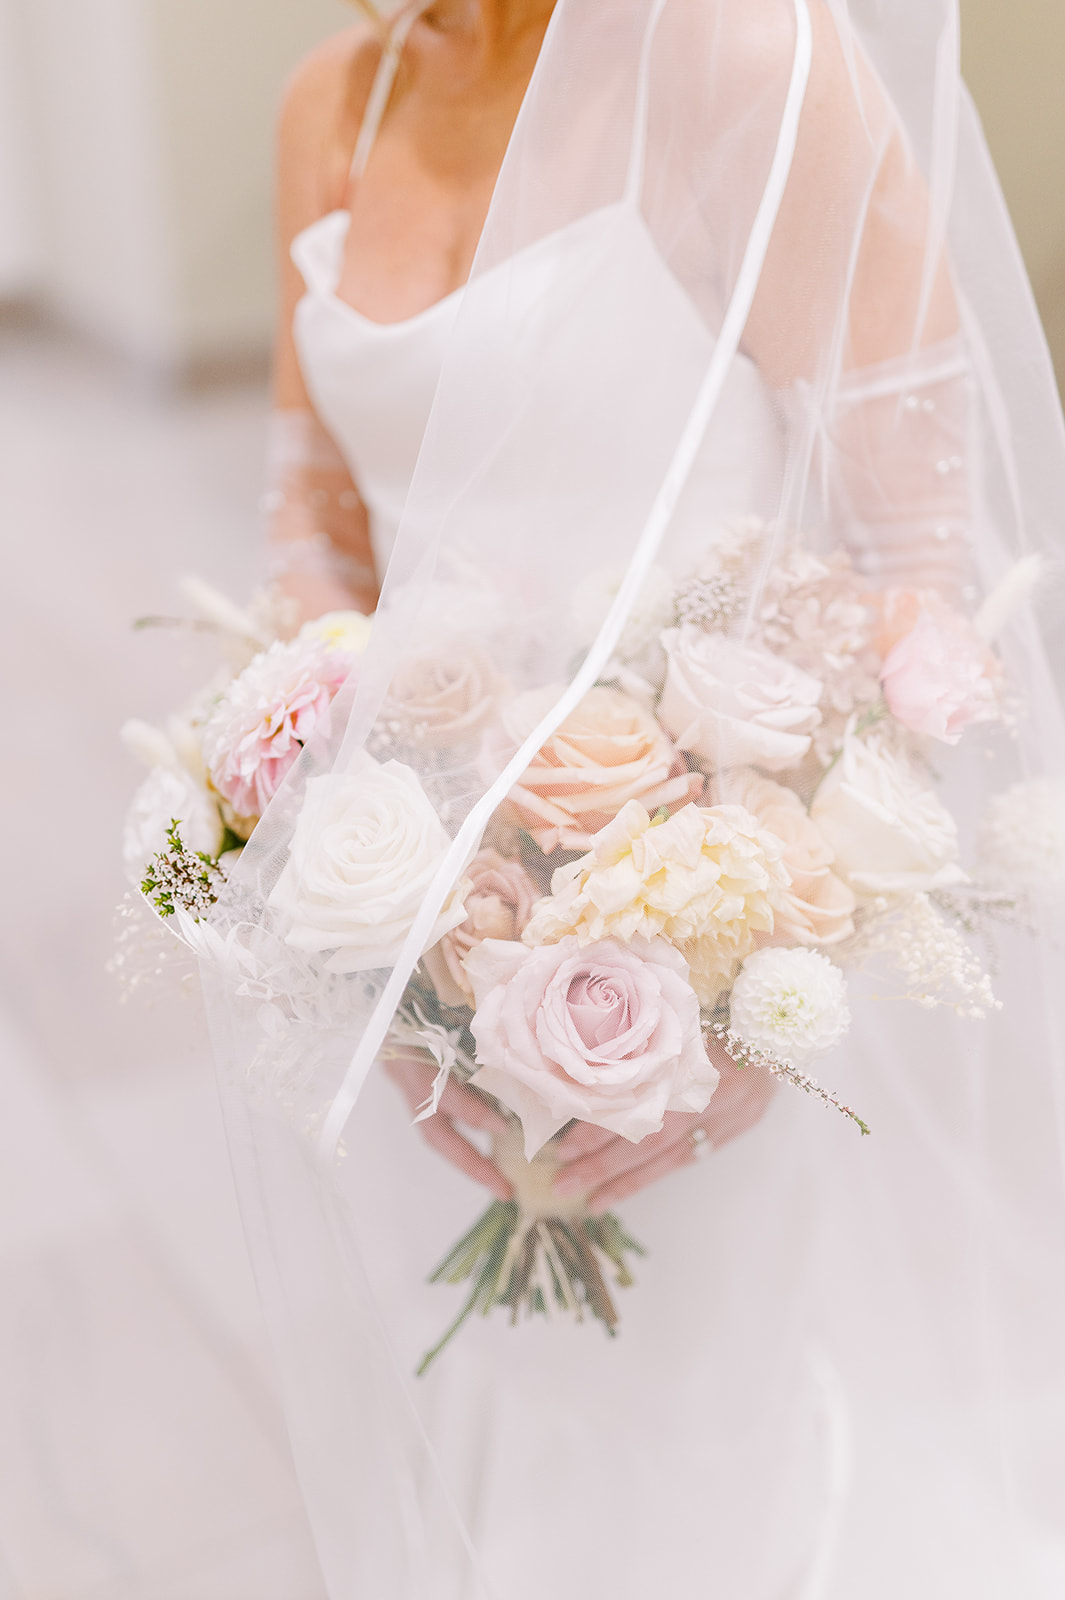 chic monochrome wedding bouquet in whites under bridal veil